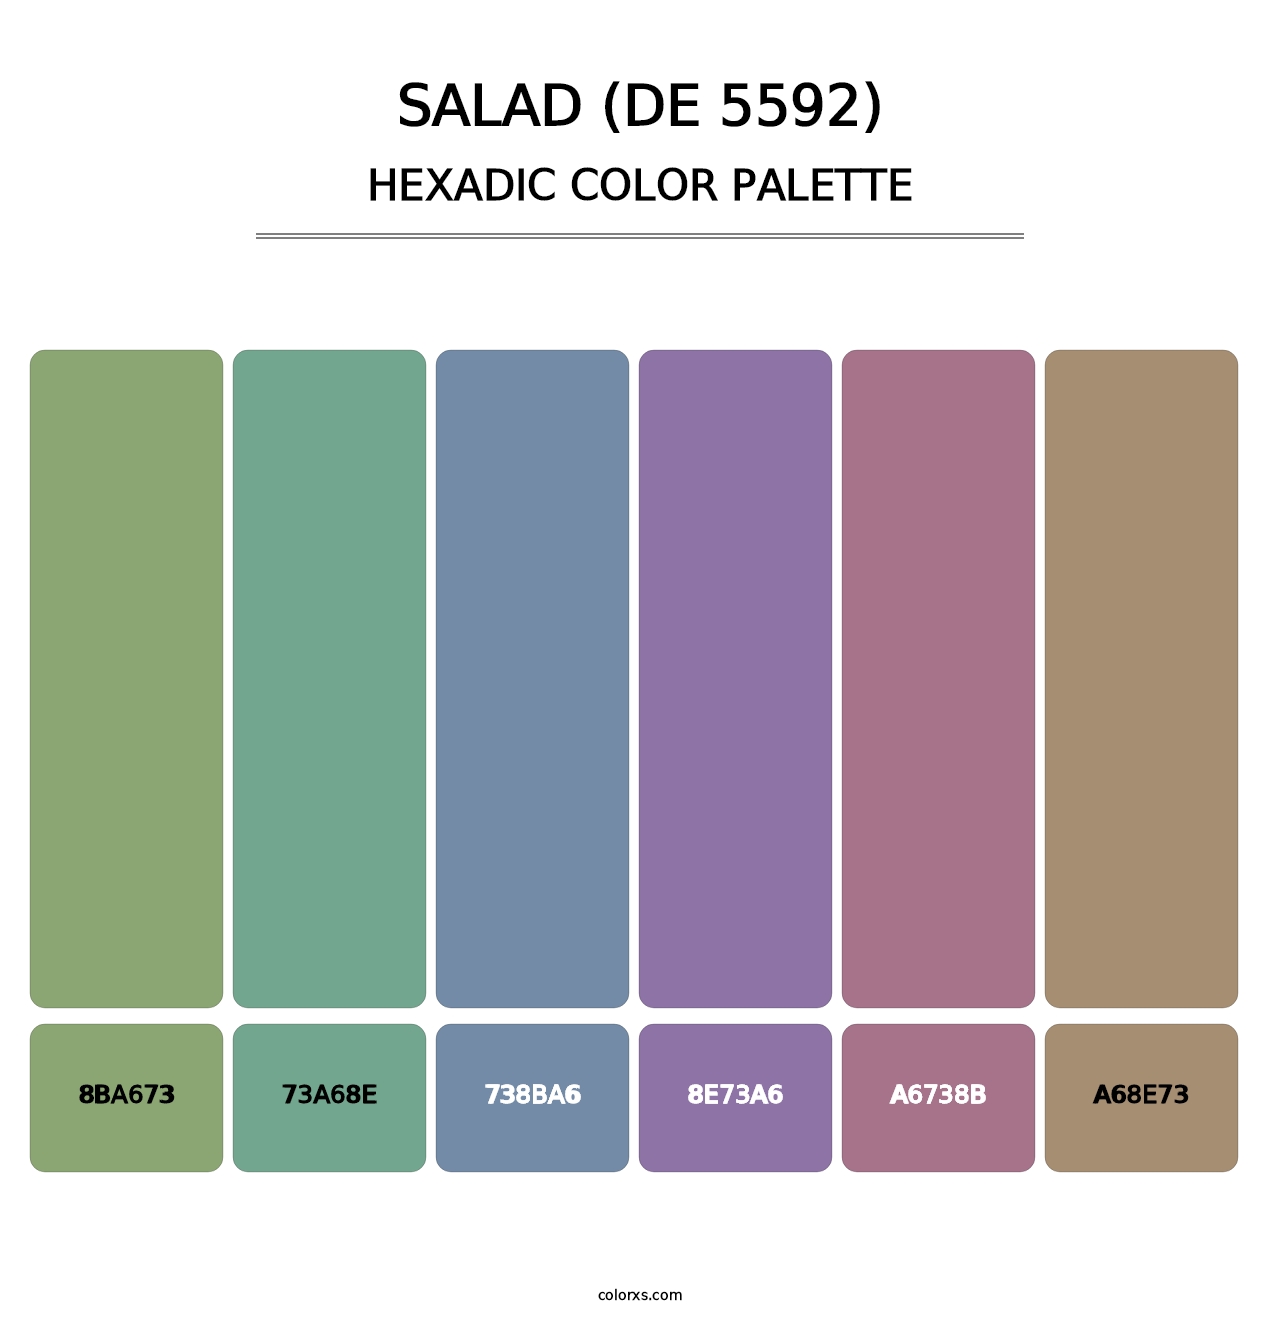 Salad (DE 5592) - Hexadic Color Palette